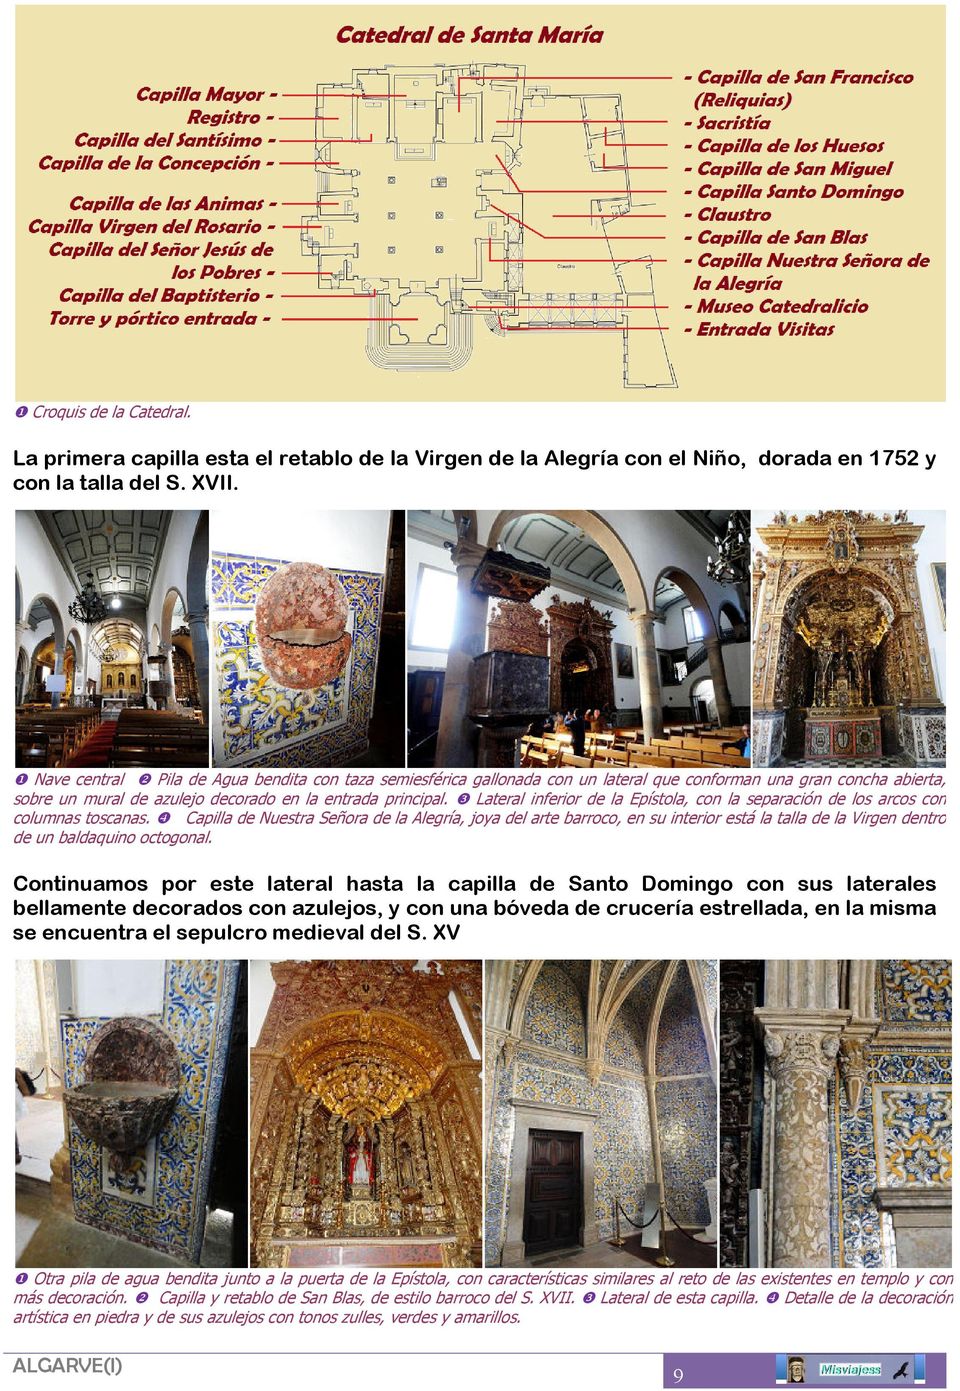 ❸ Lateral inferior de la Epístola, con la separación de los arcos con columnas toscanas.